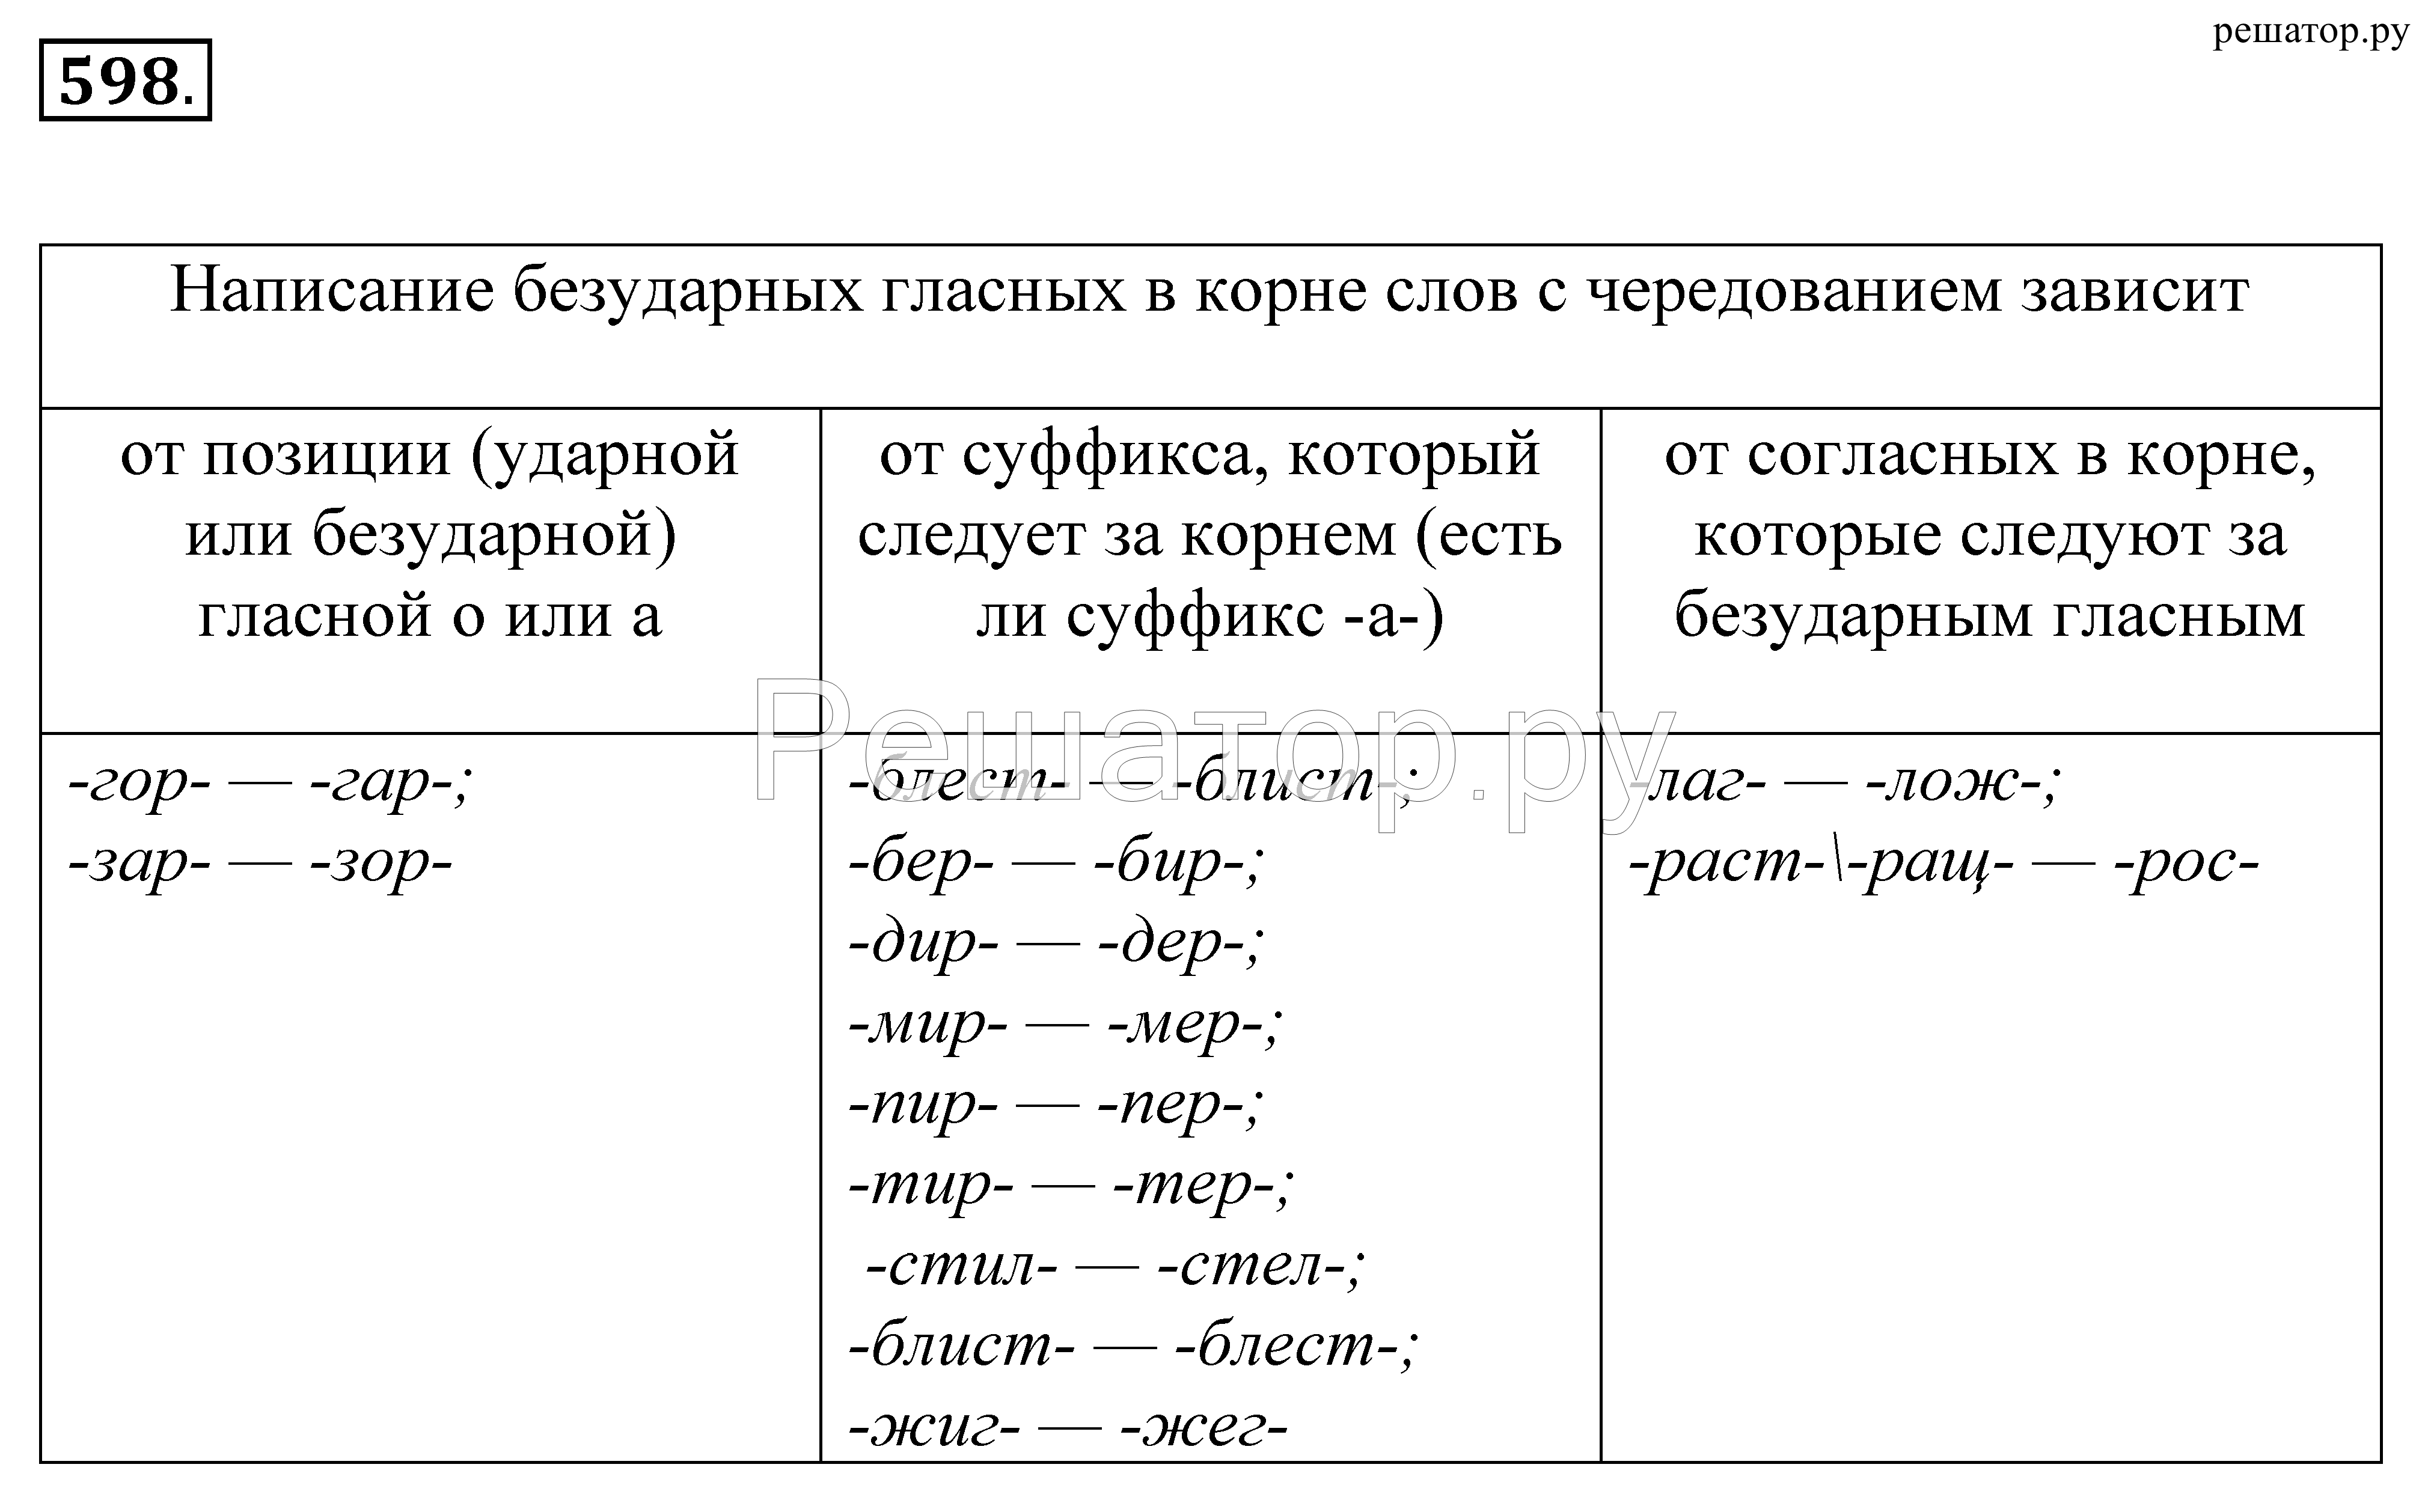 правила по русскому языку раст рост в корне слова фото 72